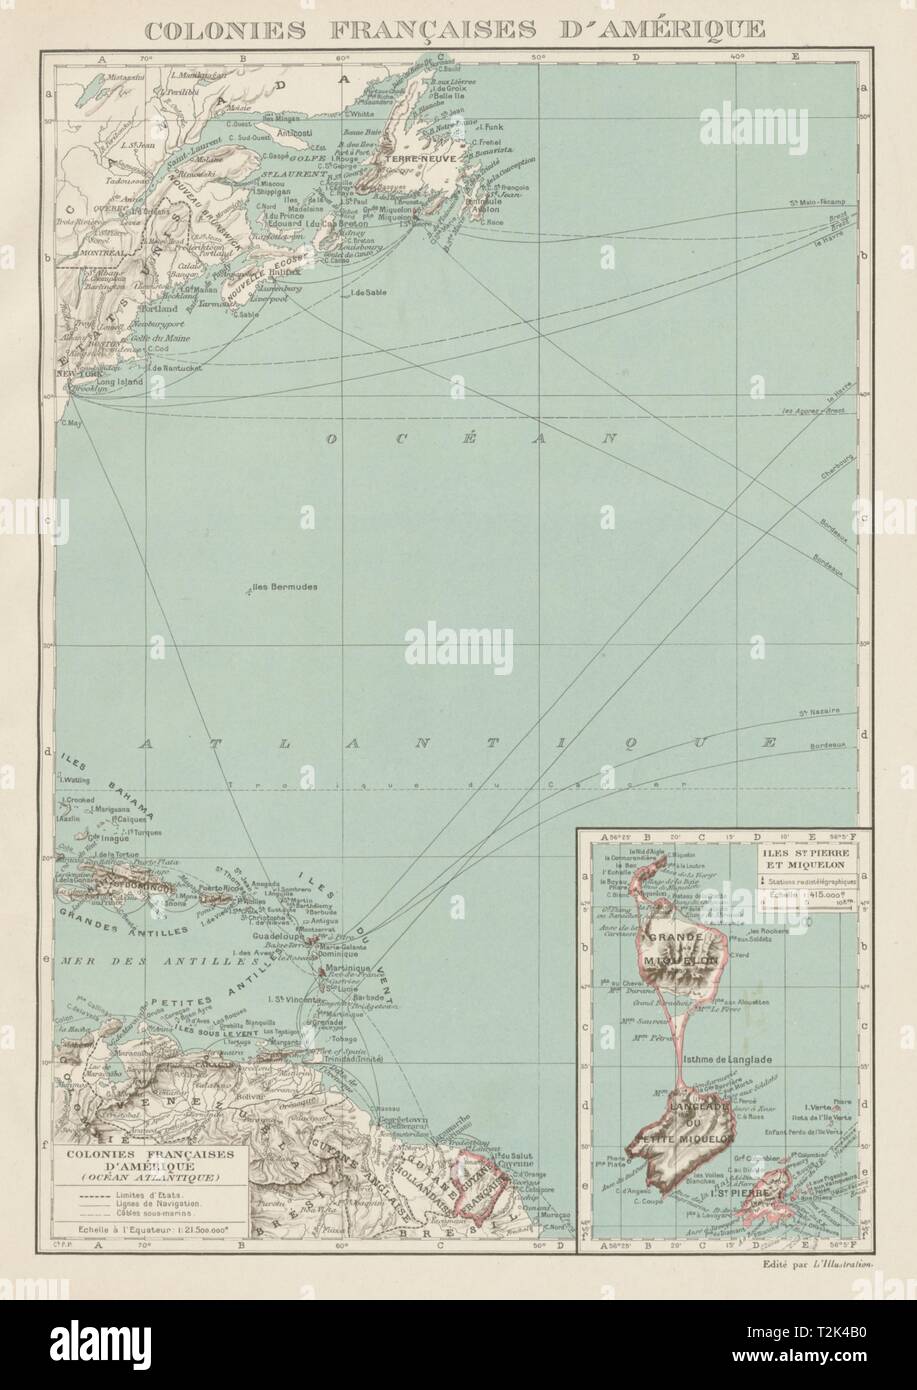 FRENCH AMERICAS. Colonies Françaises d' Amerique. St-Pierre et Miquelon 1929 map Stock Photo